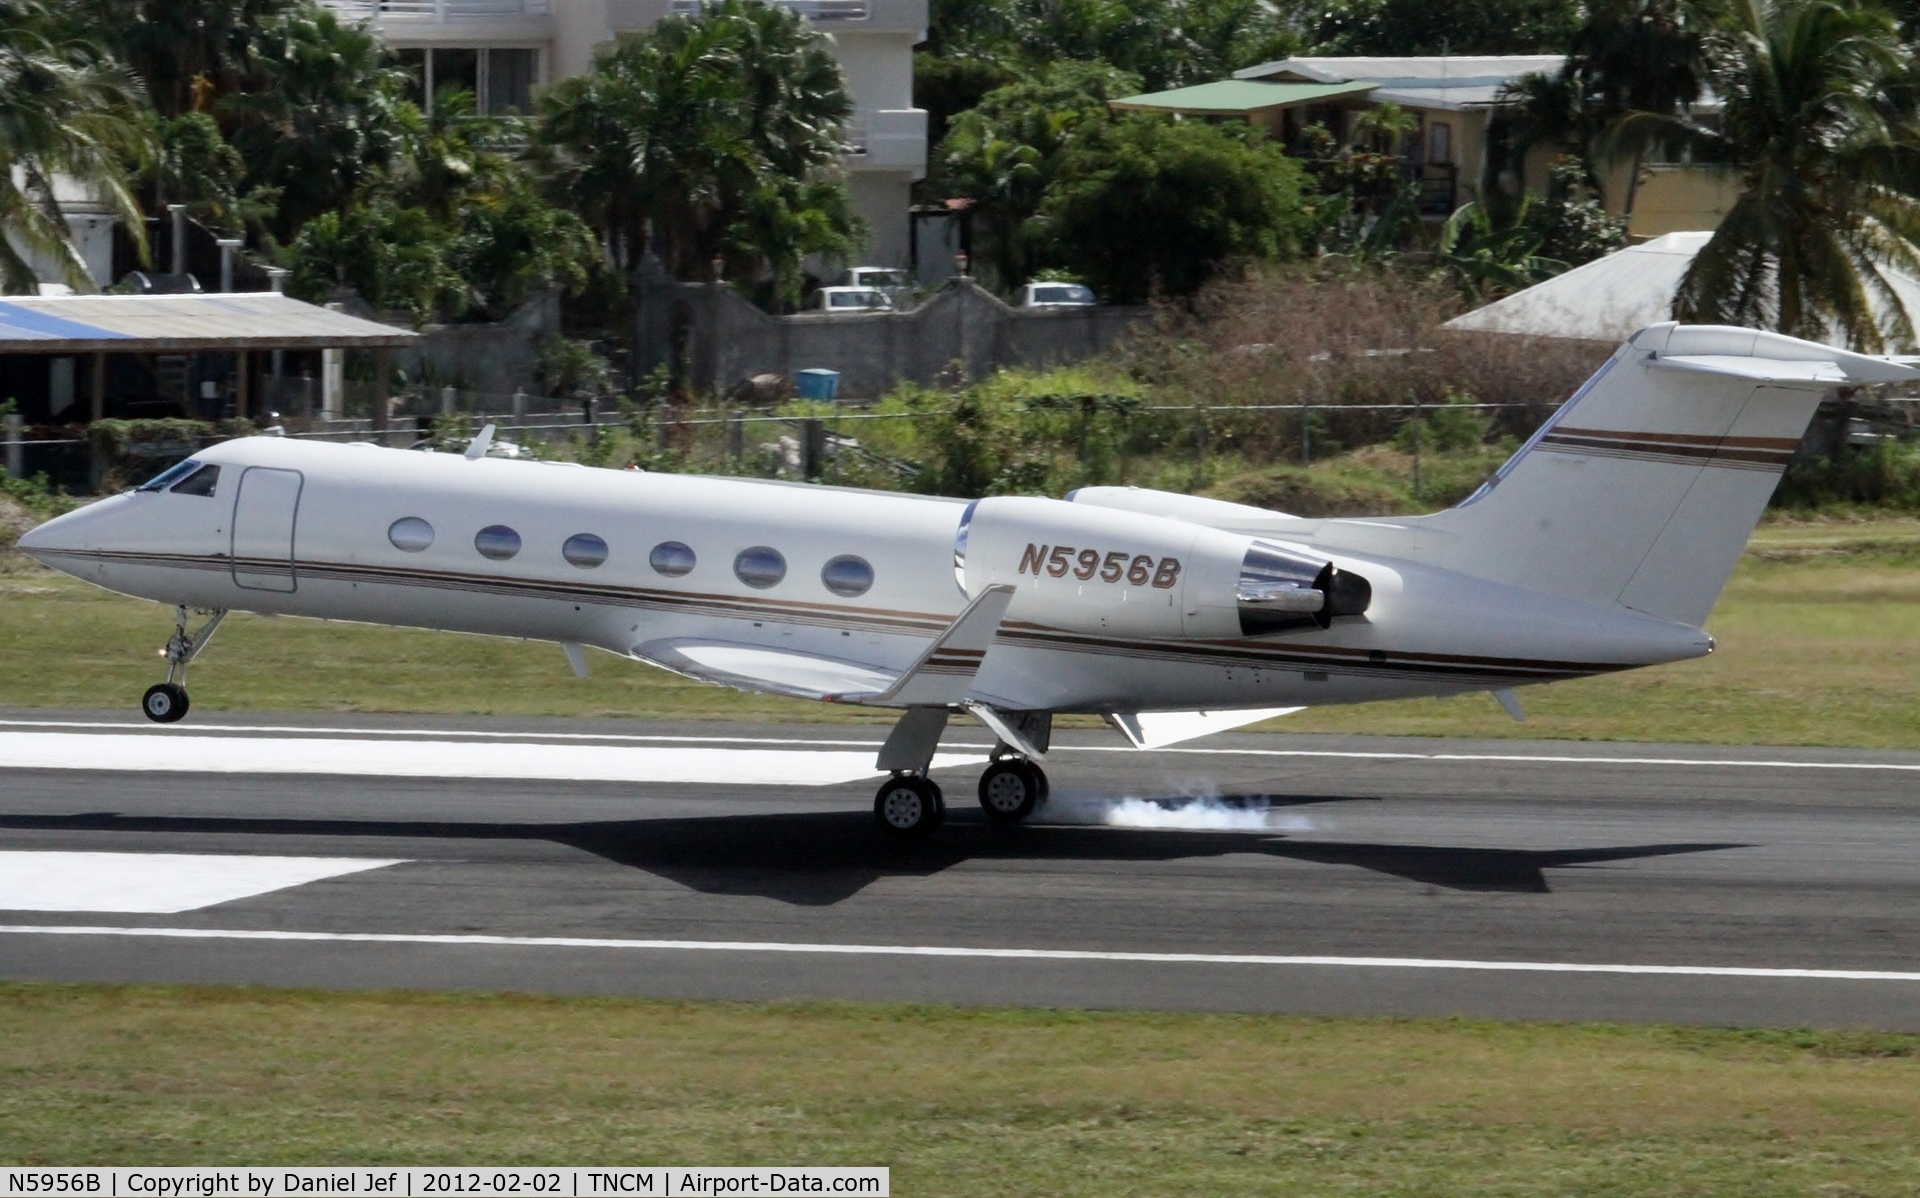 N5956B, 2001 Gulfstream Aerospace G-IV C/N 1469, N5956B